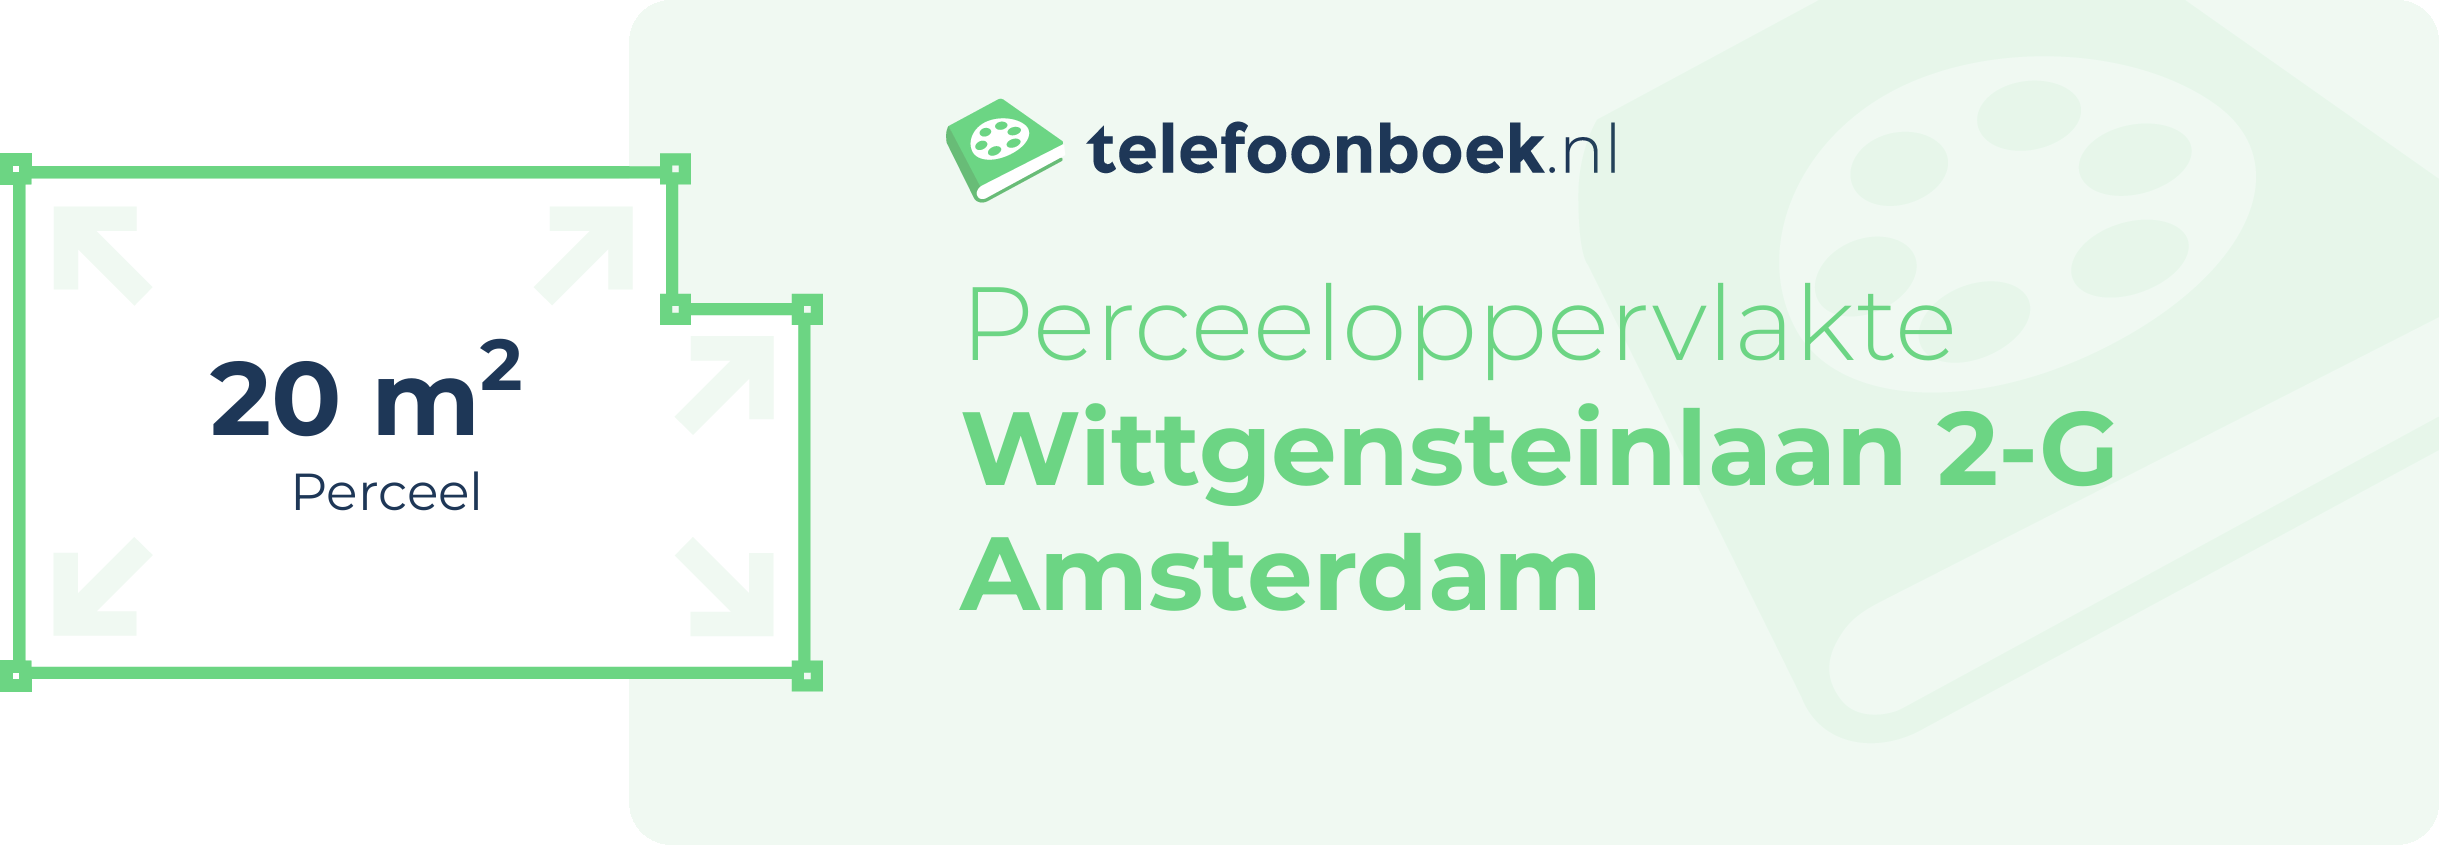 Perceeloppervlakte Wittgensteinlaan 2-G Amsterdam